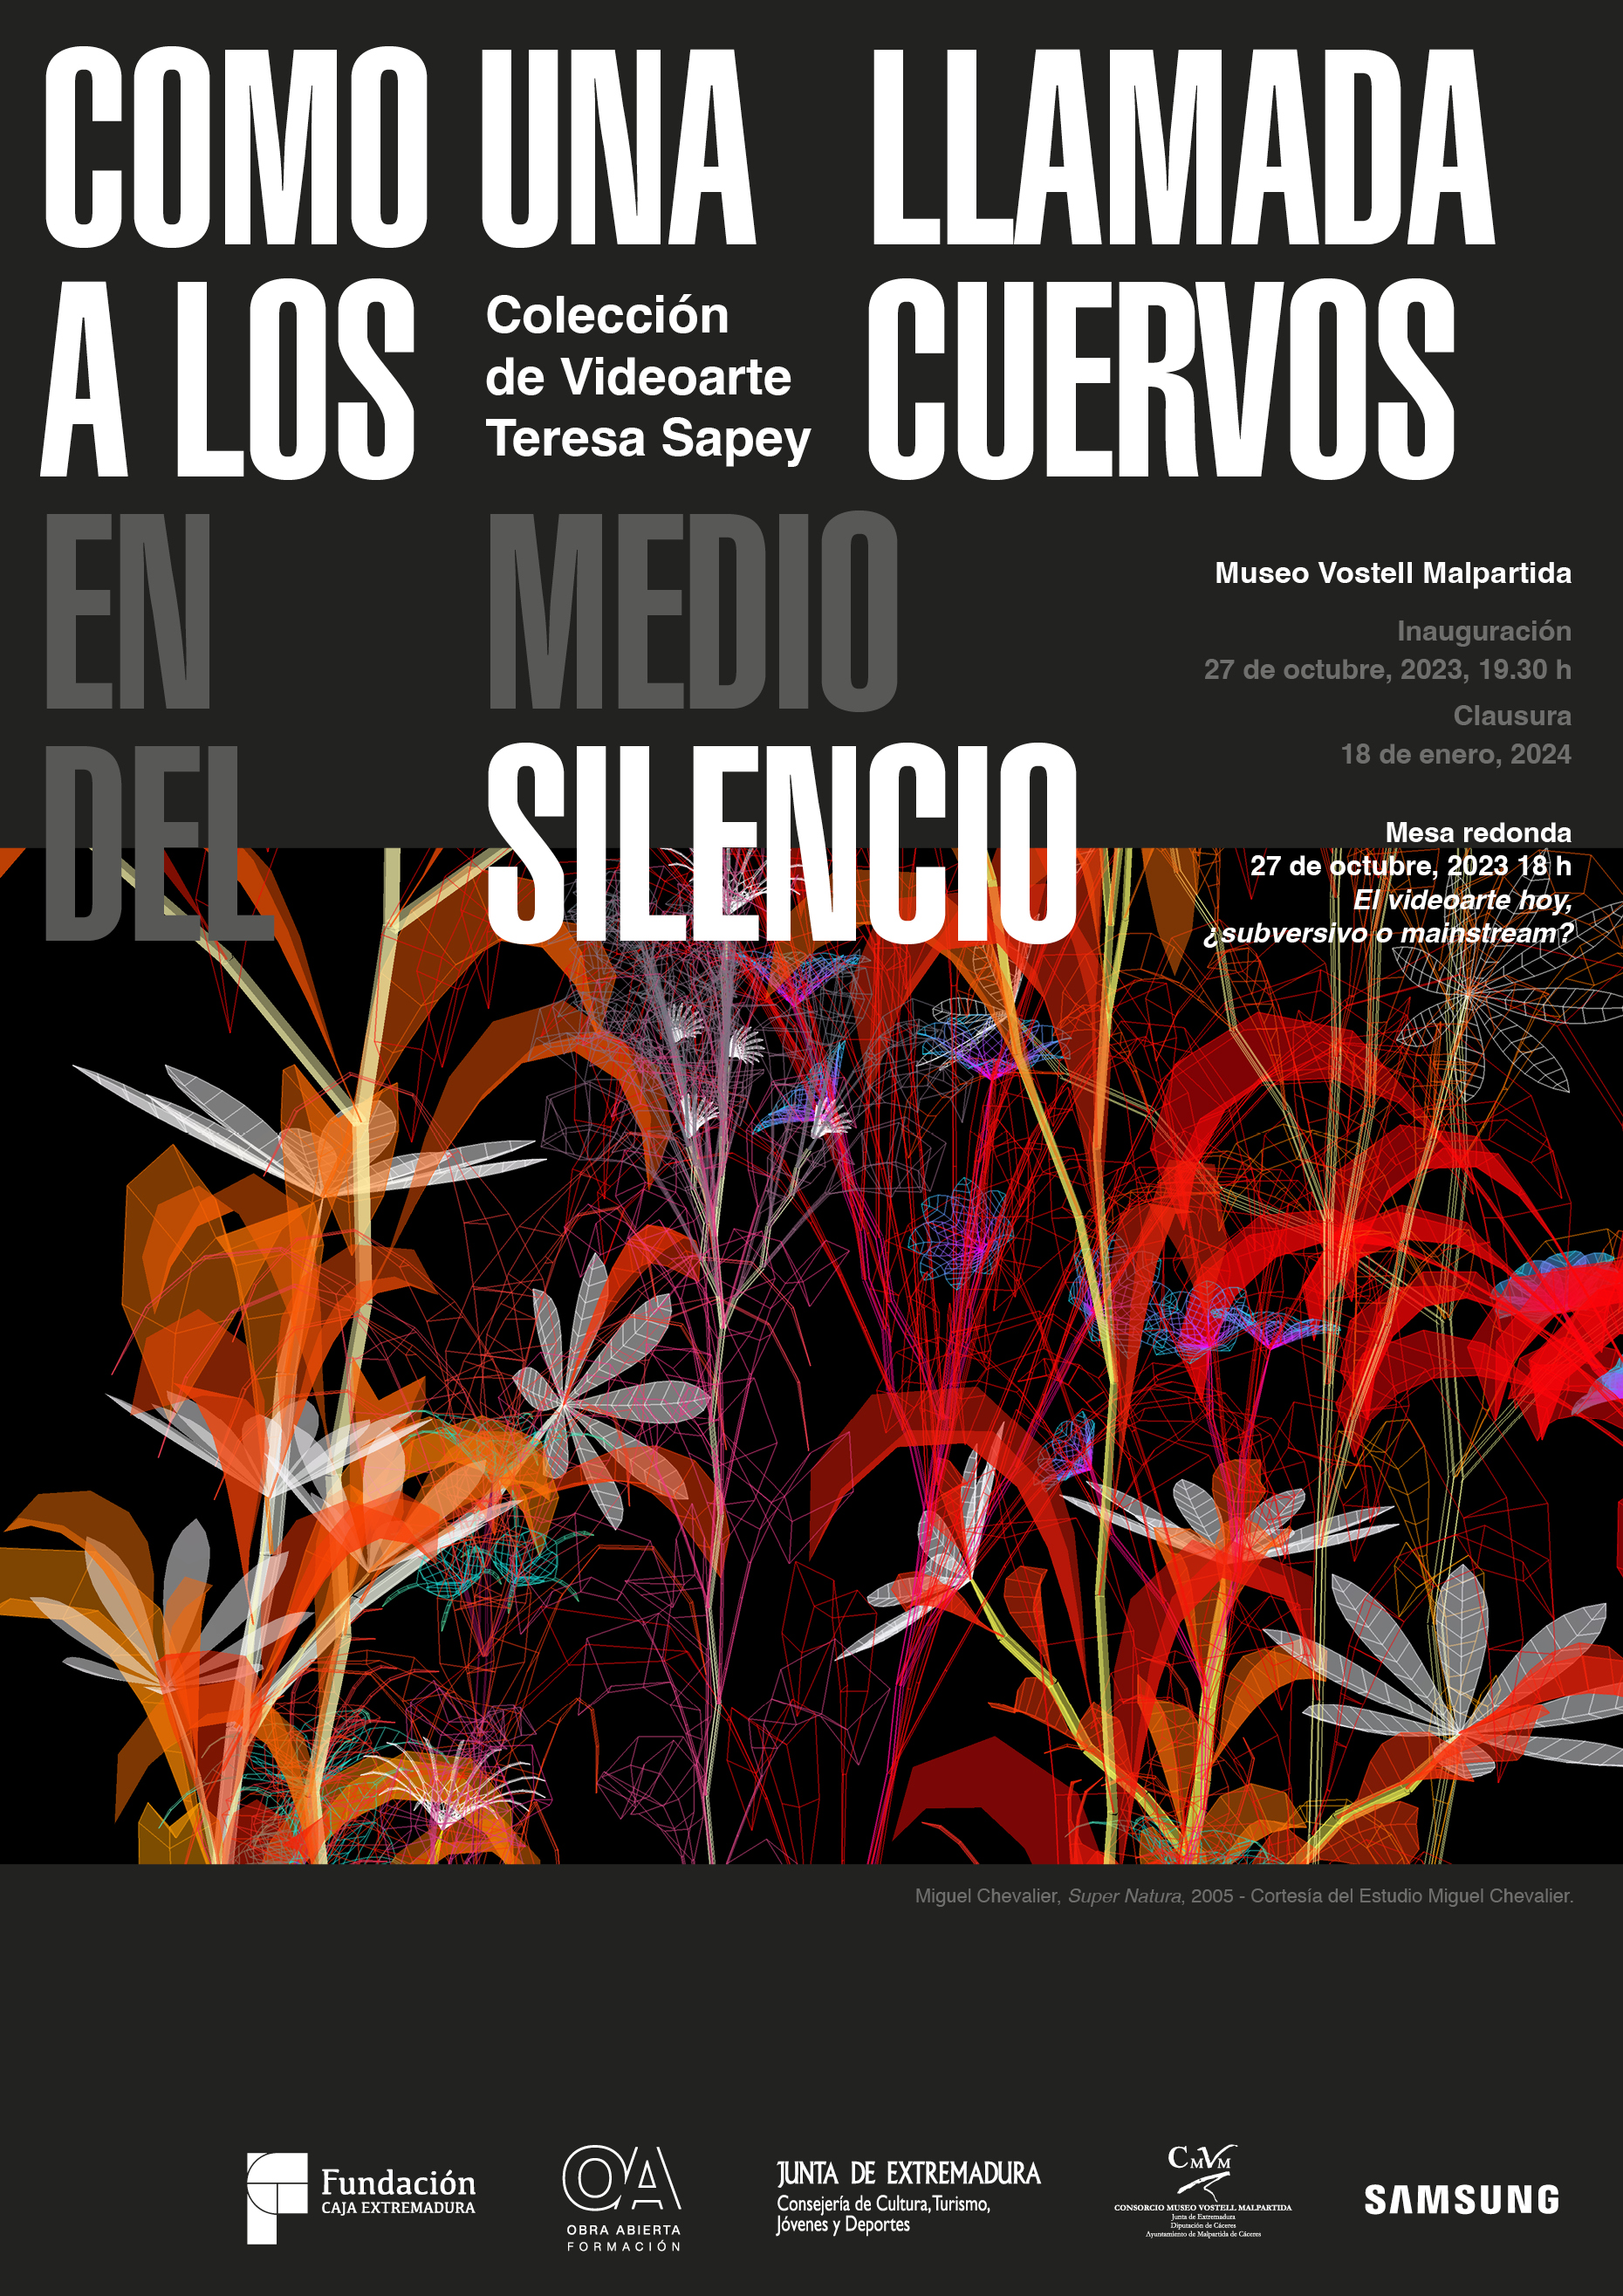 Image 1 of article El videoarte se cuela en el Museo Vostell Malpartida con obras de Bill Viola y Marina Abramovic